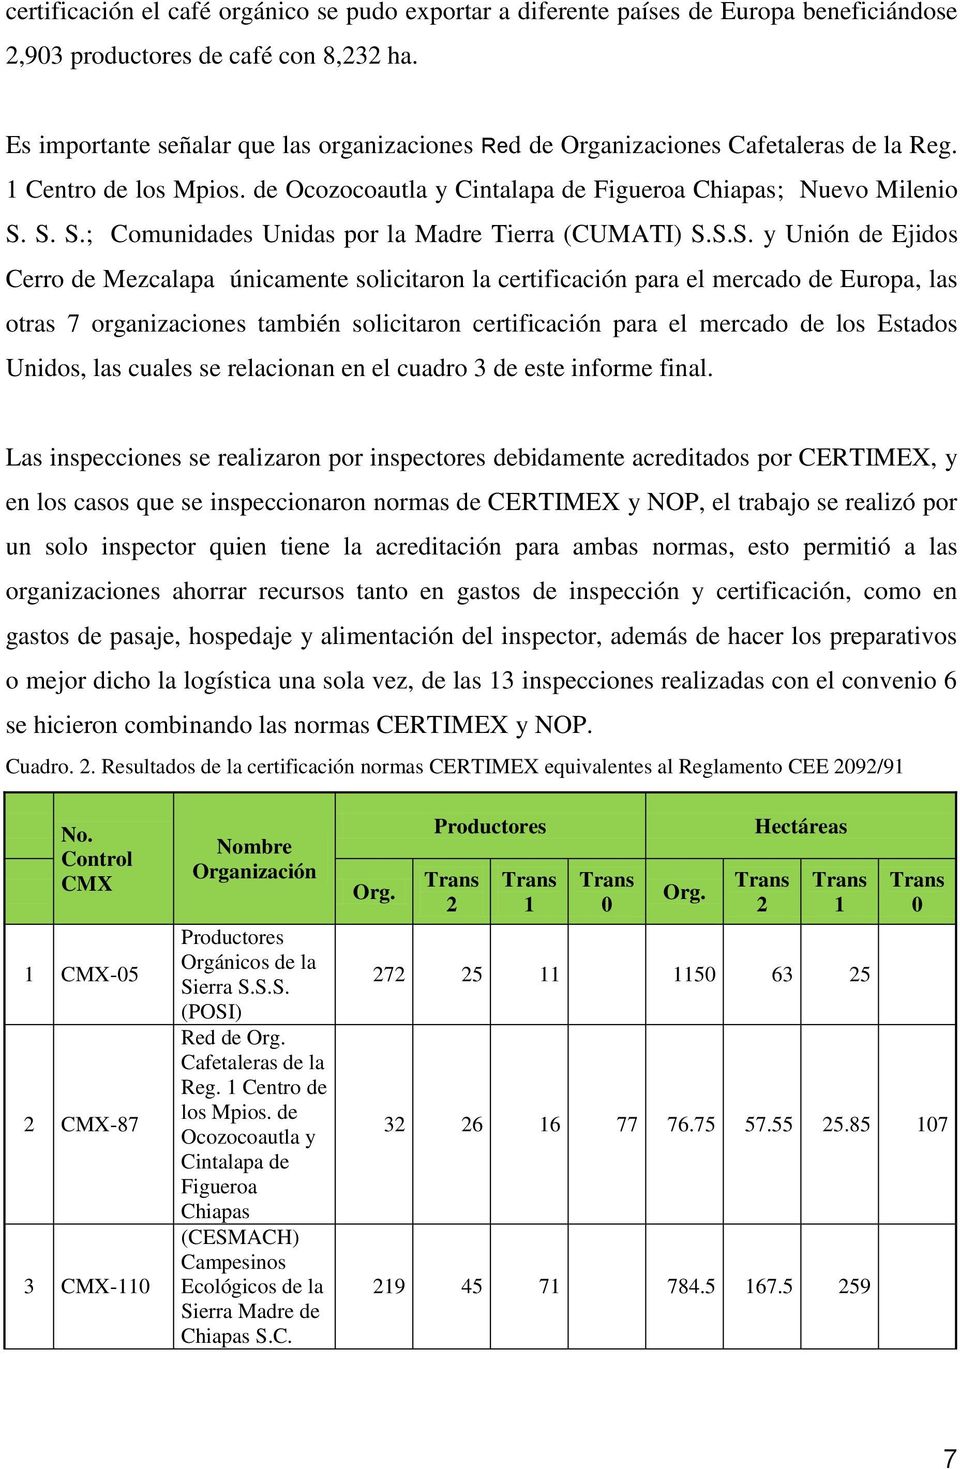 S. S.; Comunidades Unidas por la Madre Tierra (CUMATI) S.S.S. y Unión de Ejidos Cerro de Mezcalapa únicamente solicitaron la certificación para el mercado de Europa, las otras 7 organizaciones